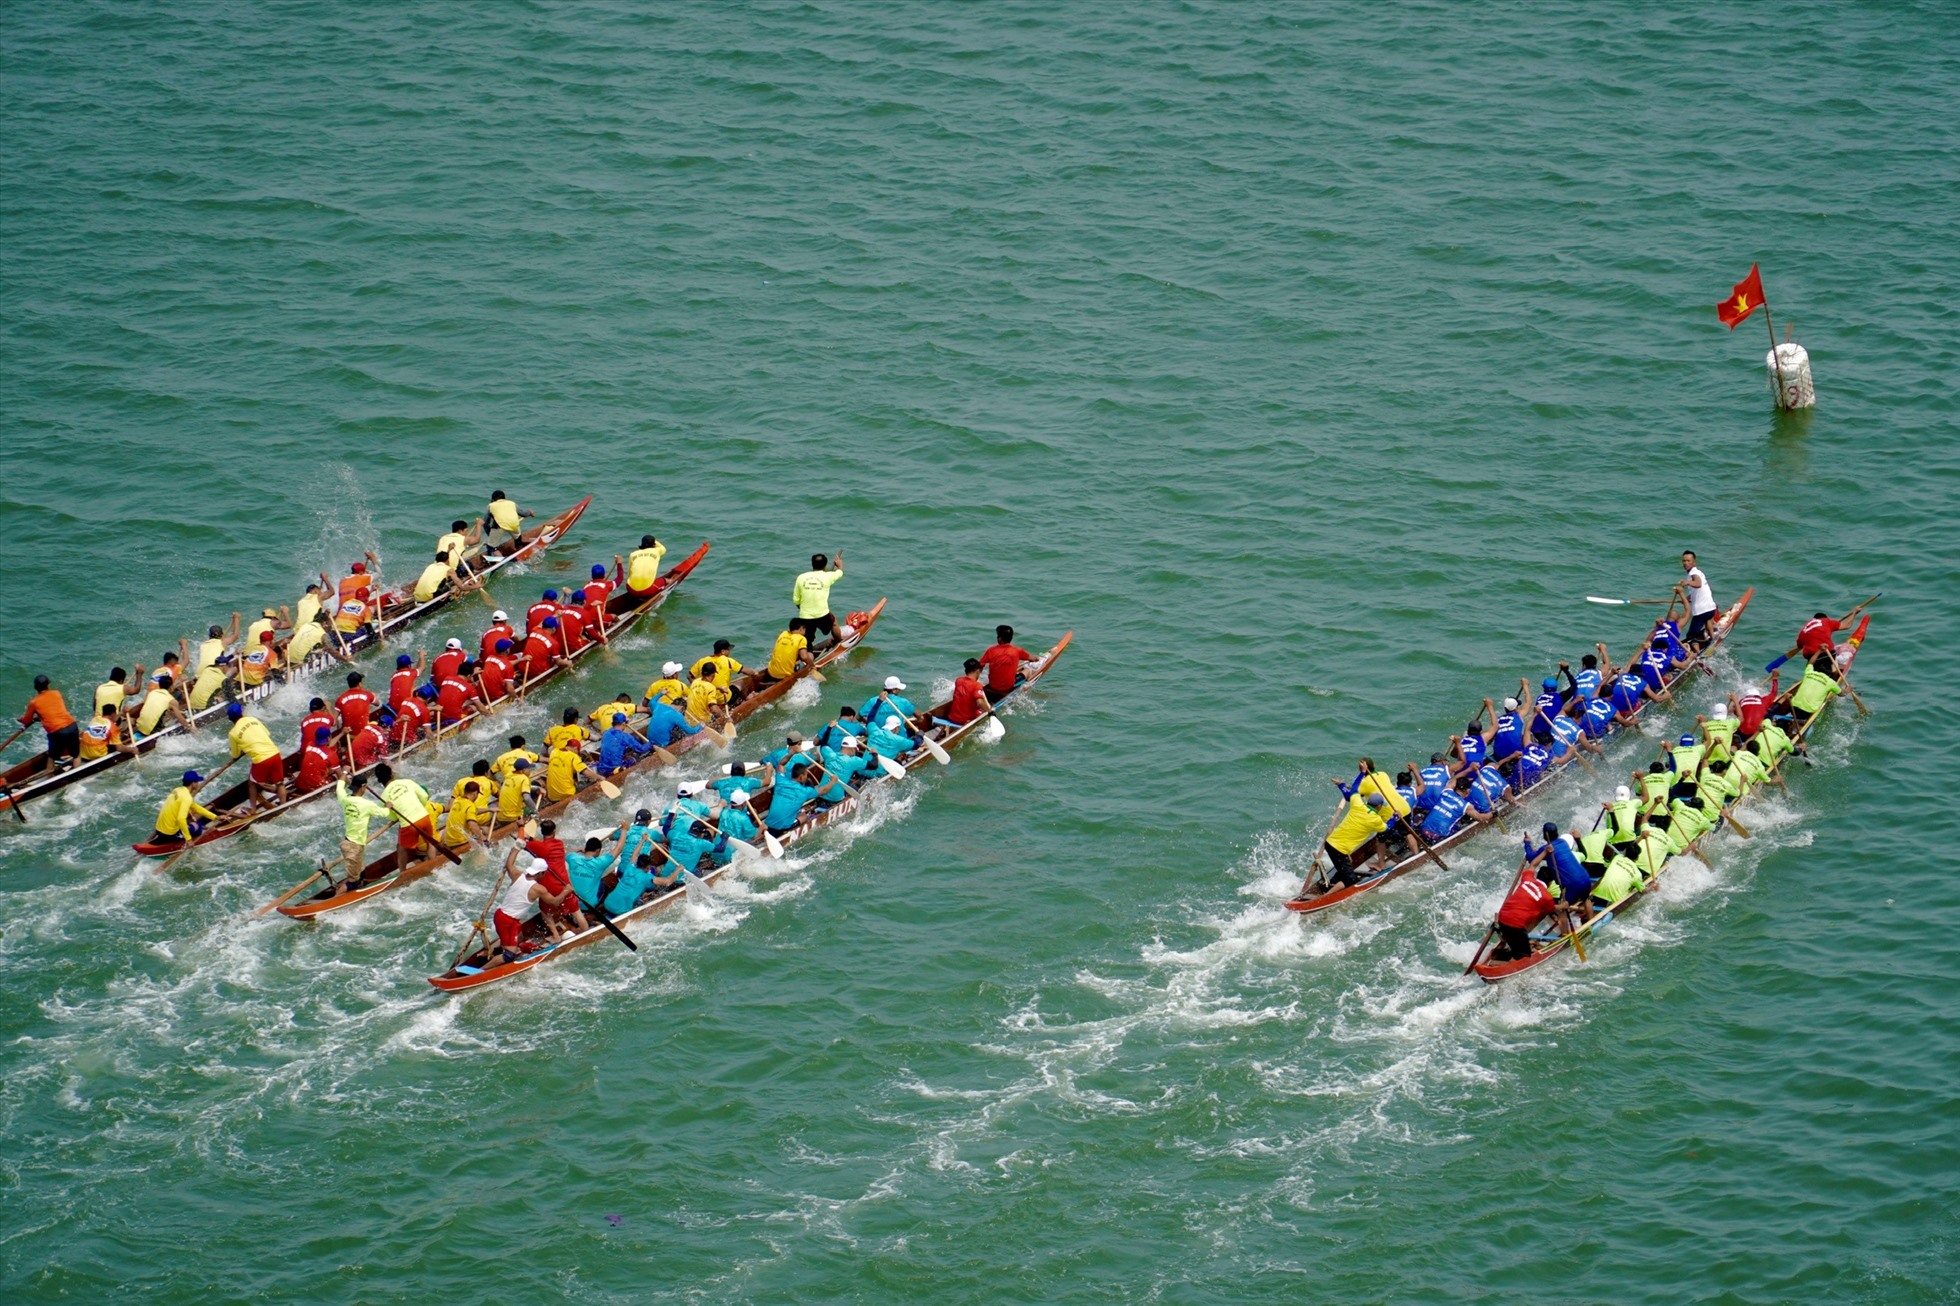 Năm nay, giải đua thuyền truyền thống có được tổ chức với sự tham gia của 10 đội đua đều đến từ Đà Nẵng và Quảng Nam.